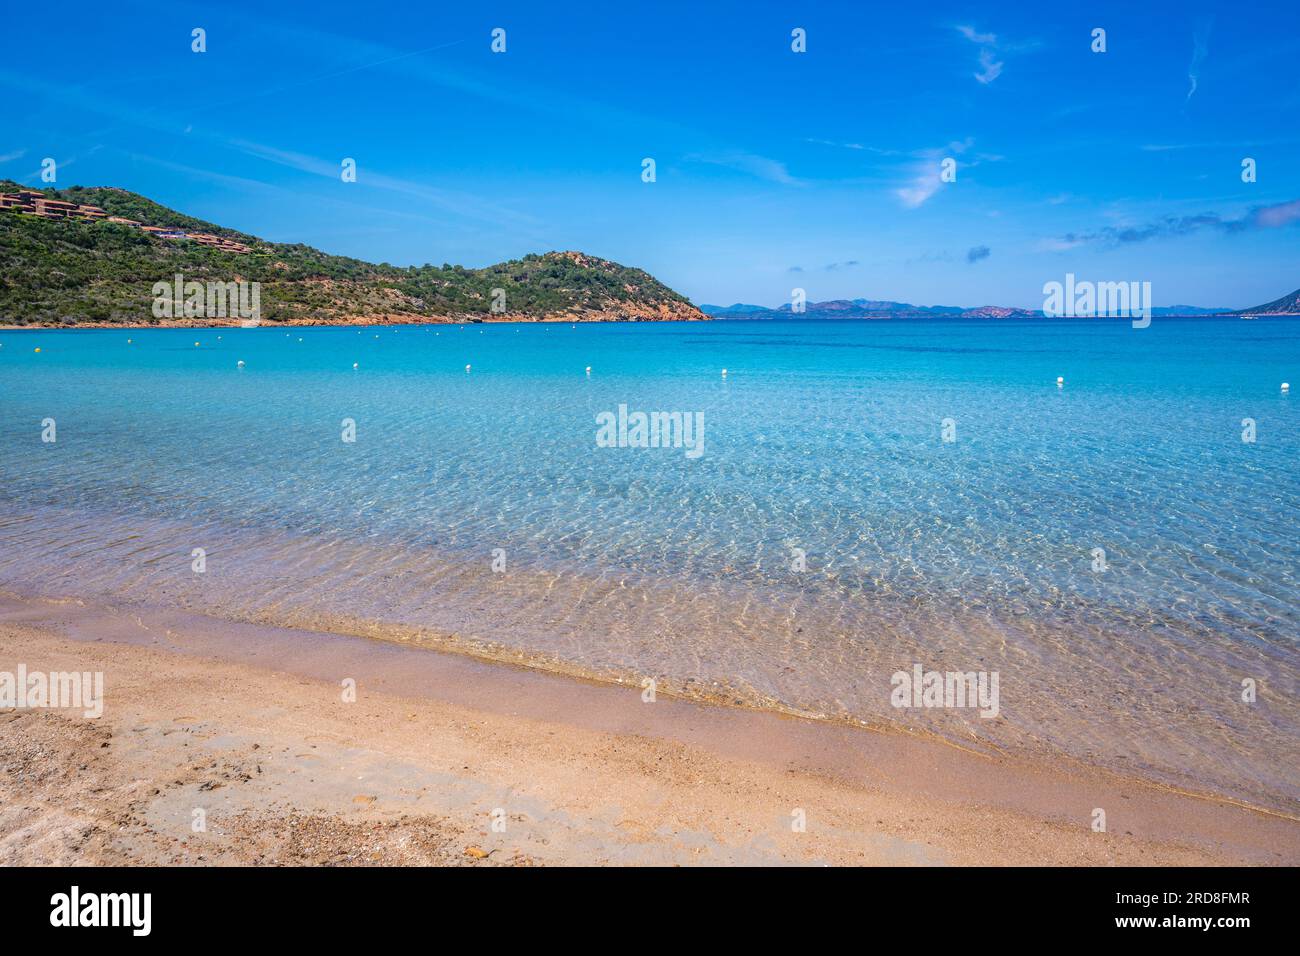 Vue sur la plage de Capo Coda Cavallo depuis la position surélevée, Sardaigne, Italie, Méditerranée, Europe Banque D'Images